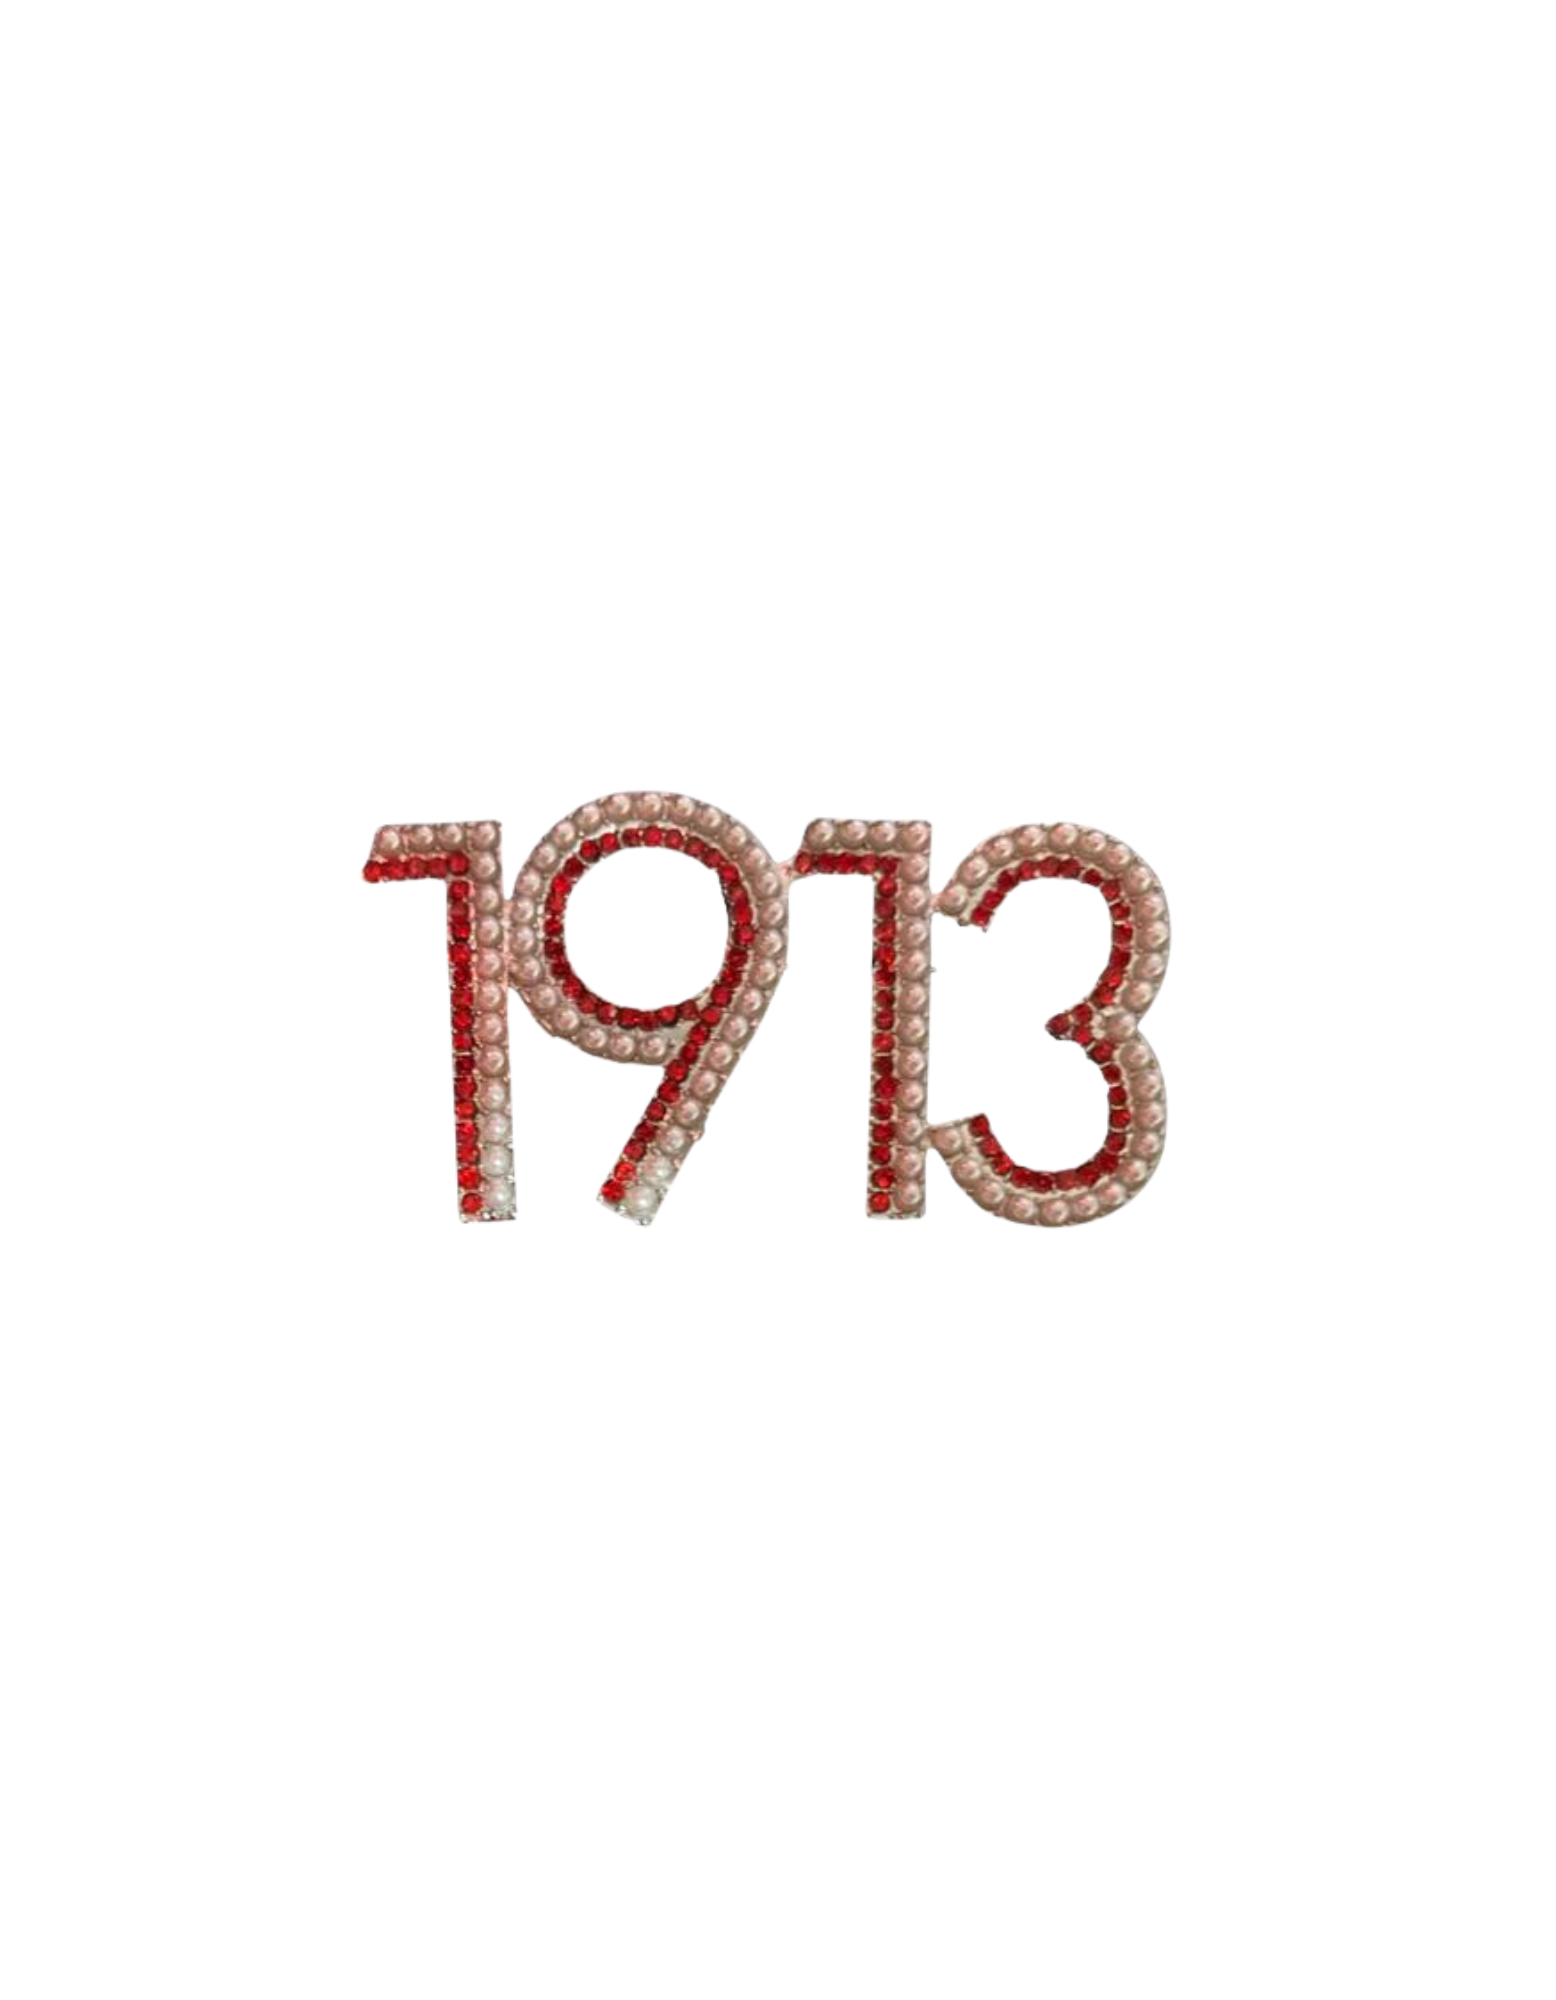 1913 Crimson & Cream bling brooch